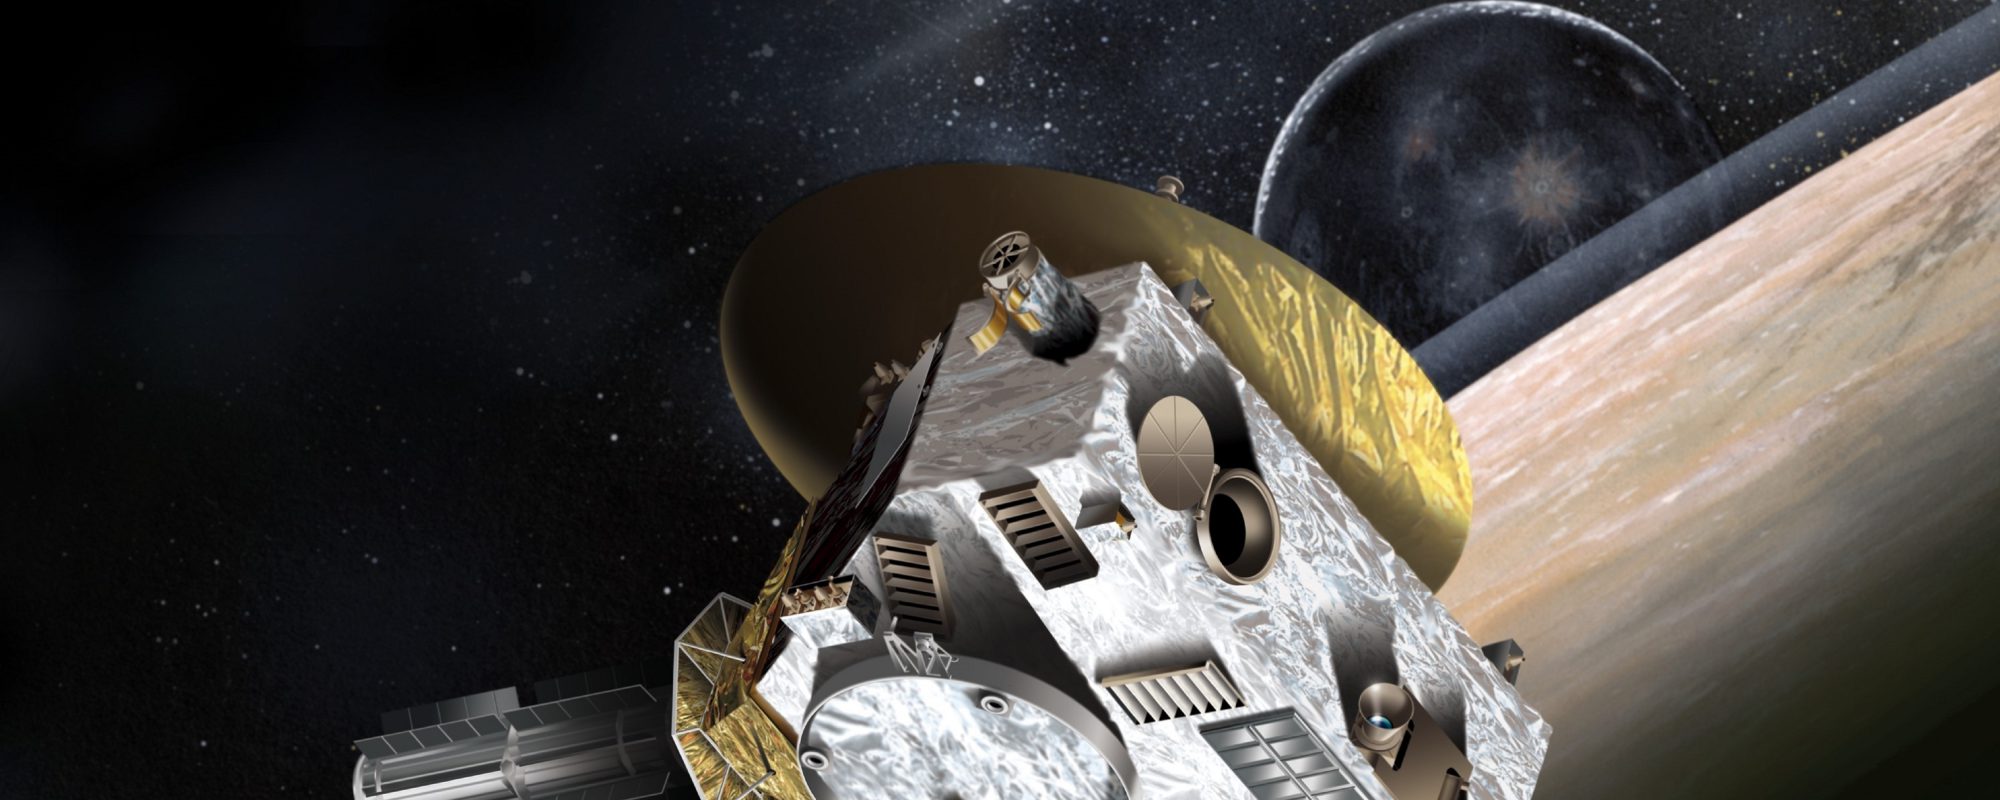 Sonda New Horizons explorando el espacio